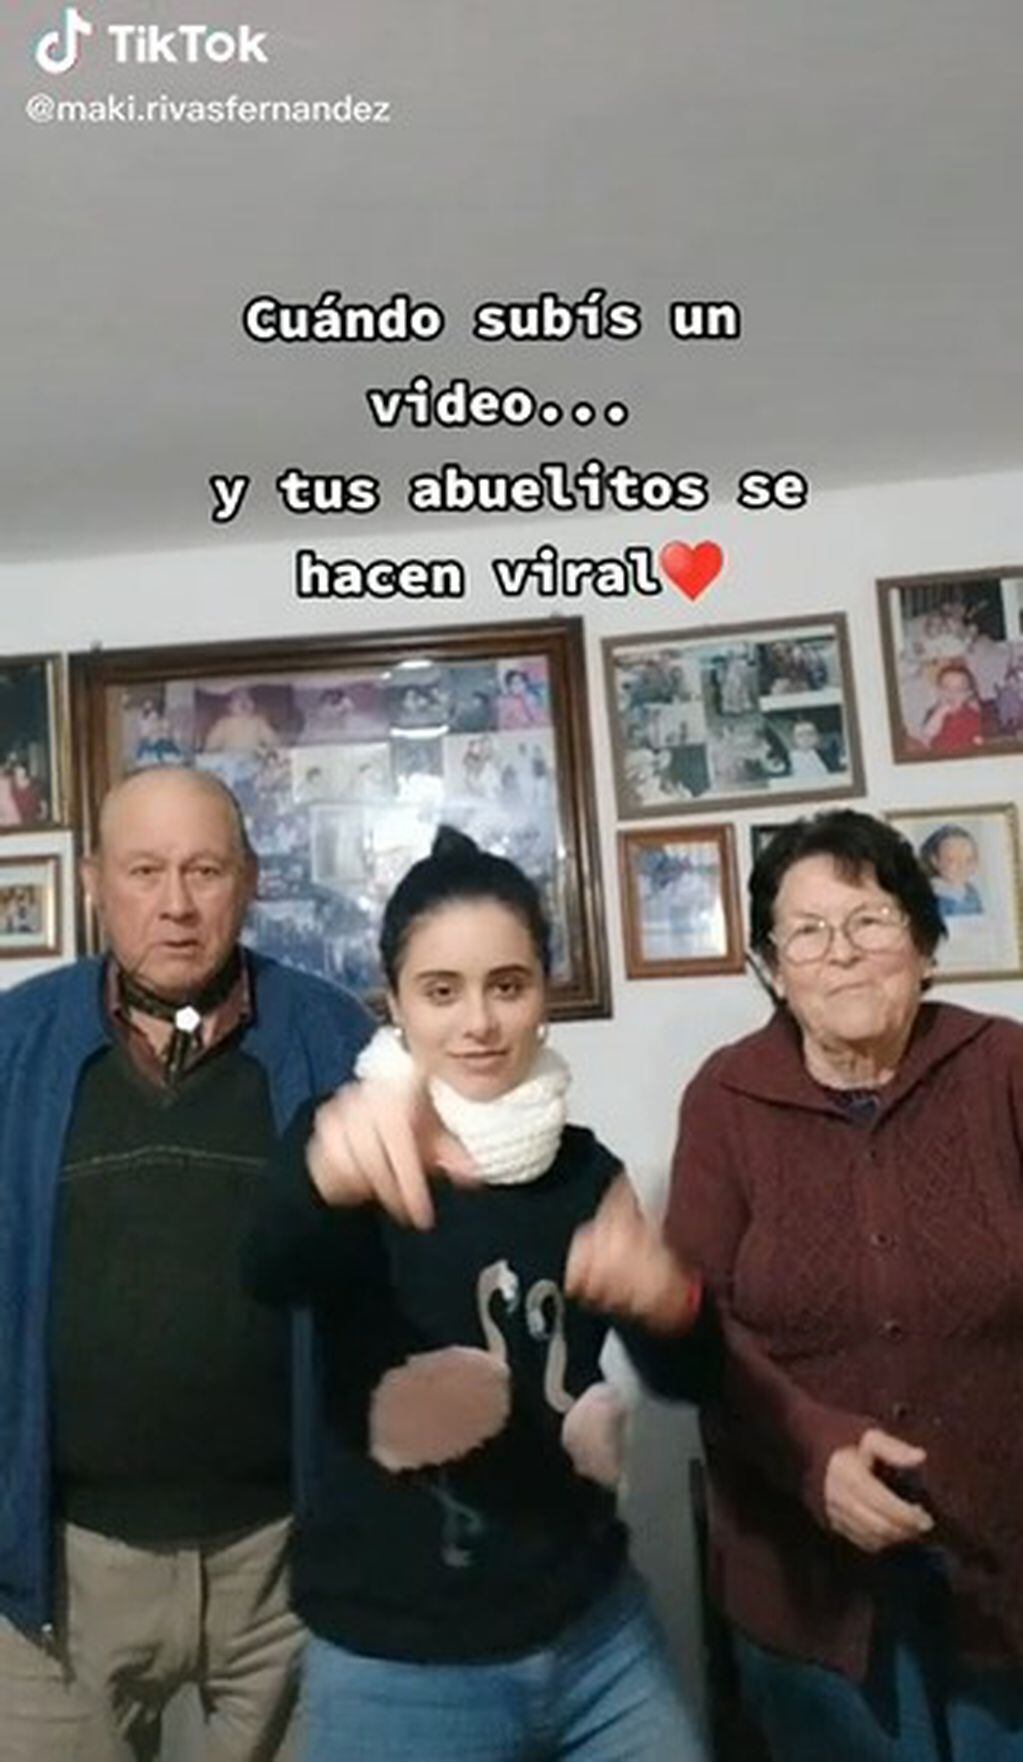 La joven volvió a subir un video con sus abuelos tras la viralización.